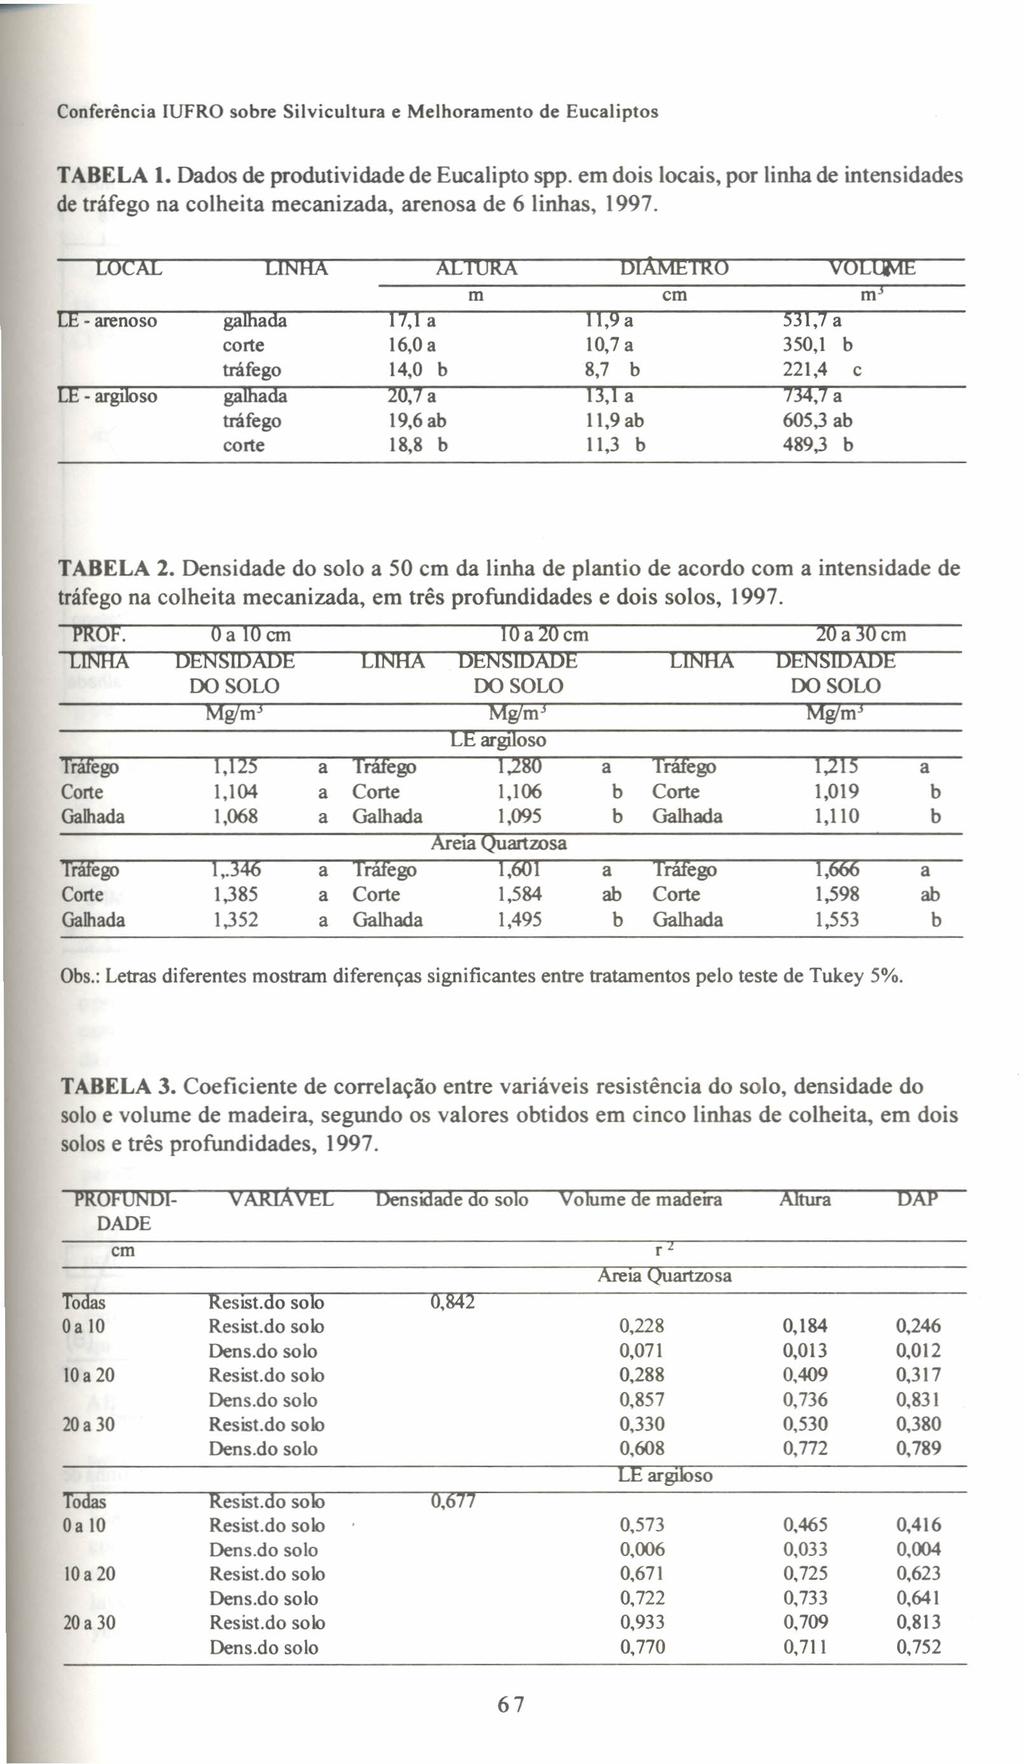 TABELA 1. Dados de produtividade de Eucalipto spp. em dois locais, por linha de intensidades de tráfego na colheita mecanizada, arenosa de 6 linhas, 1997.